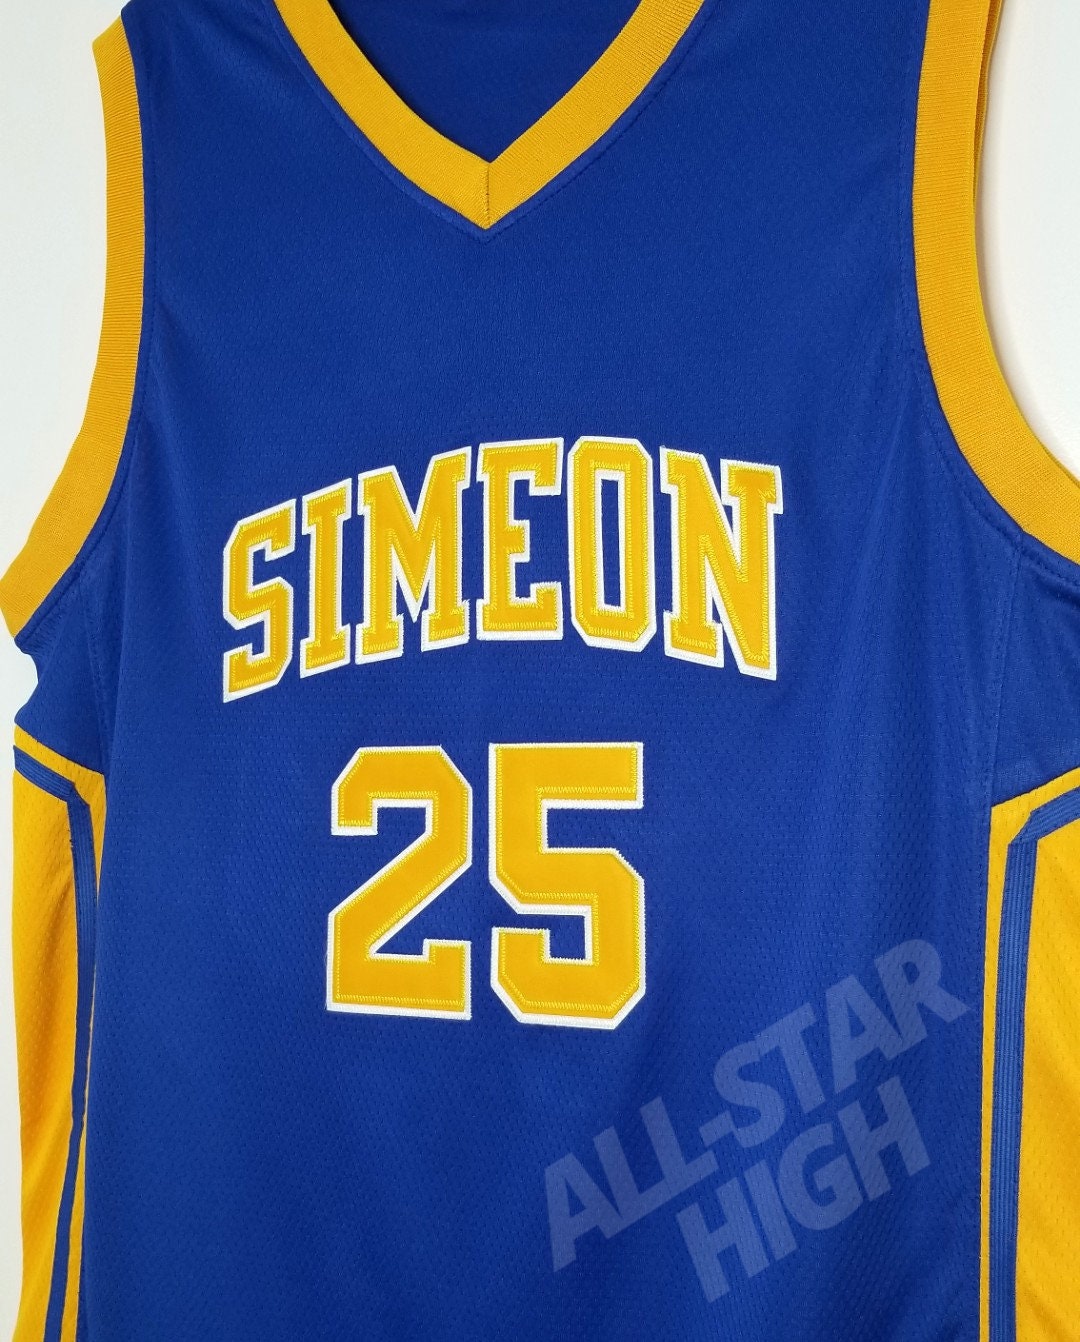 Headgear Classics Derrick Rose White Simeon HS Basketball Jersey